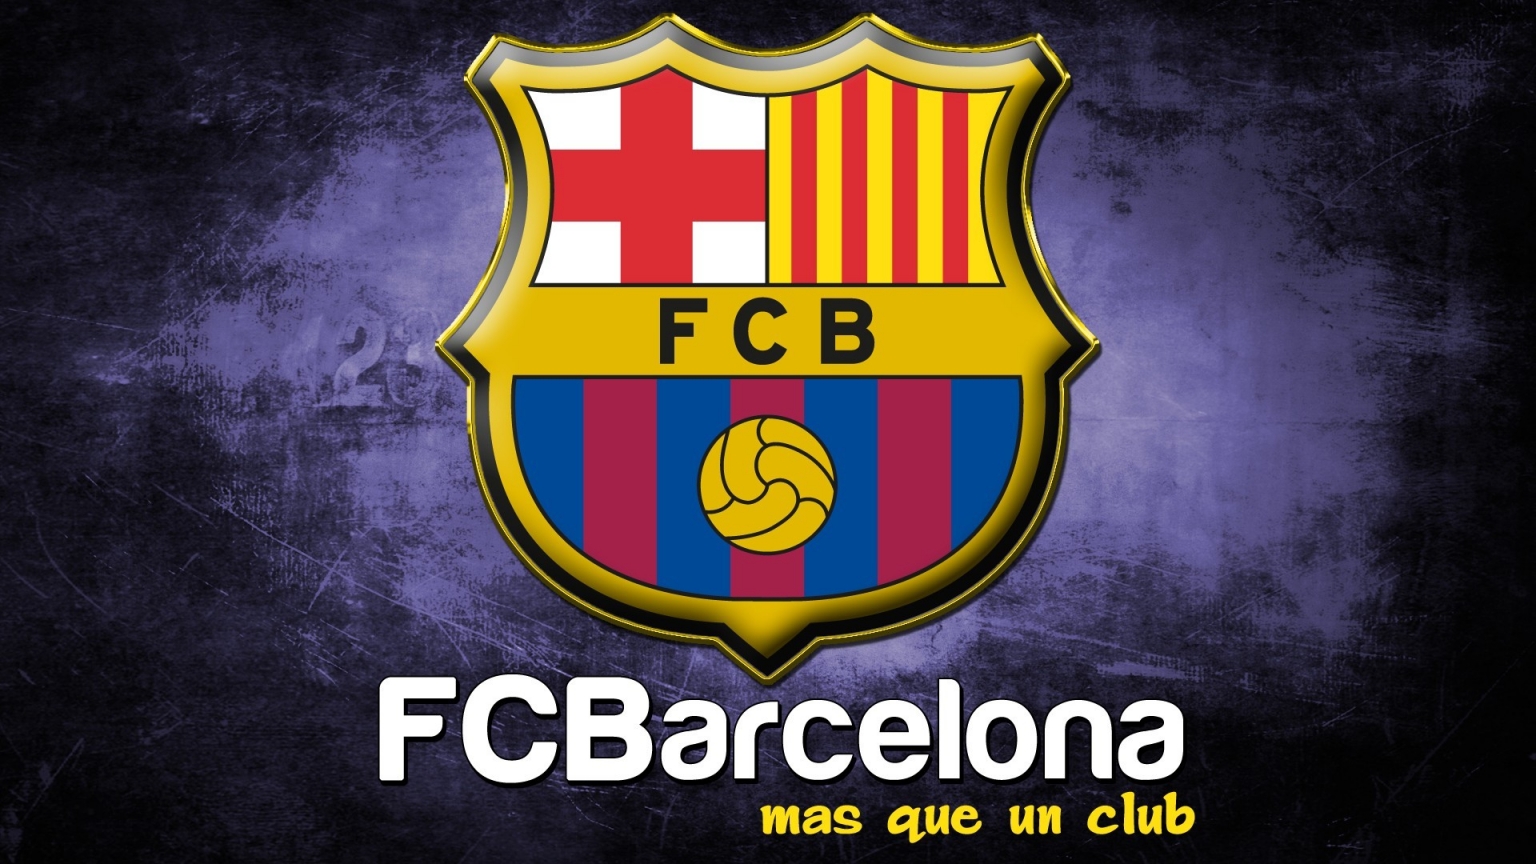 Logo of Barcelona for 1536 x 864 HDTV resolution